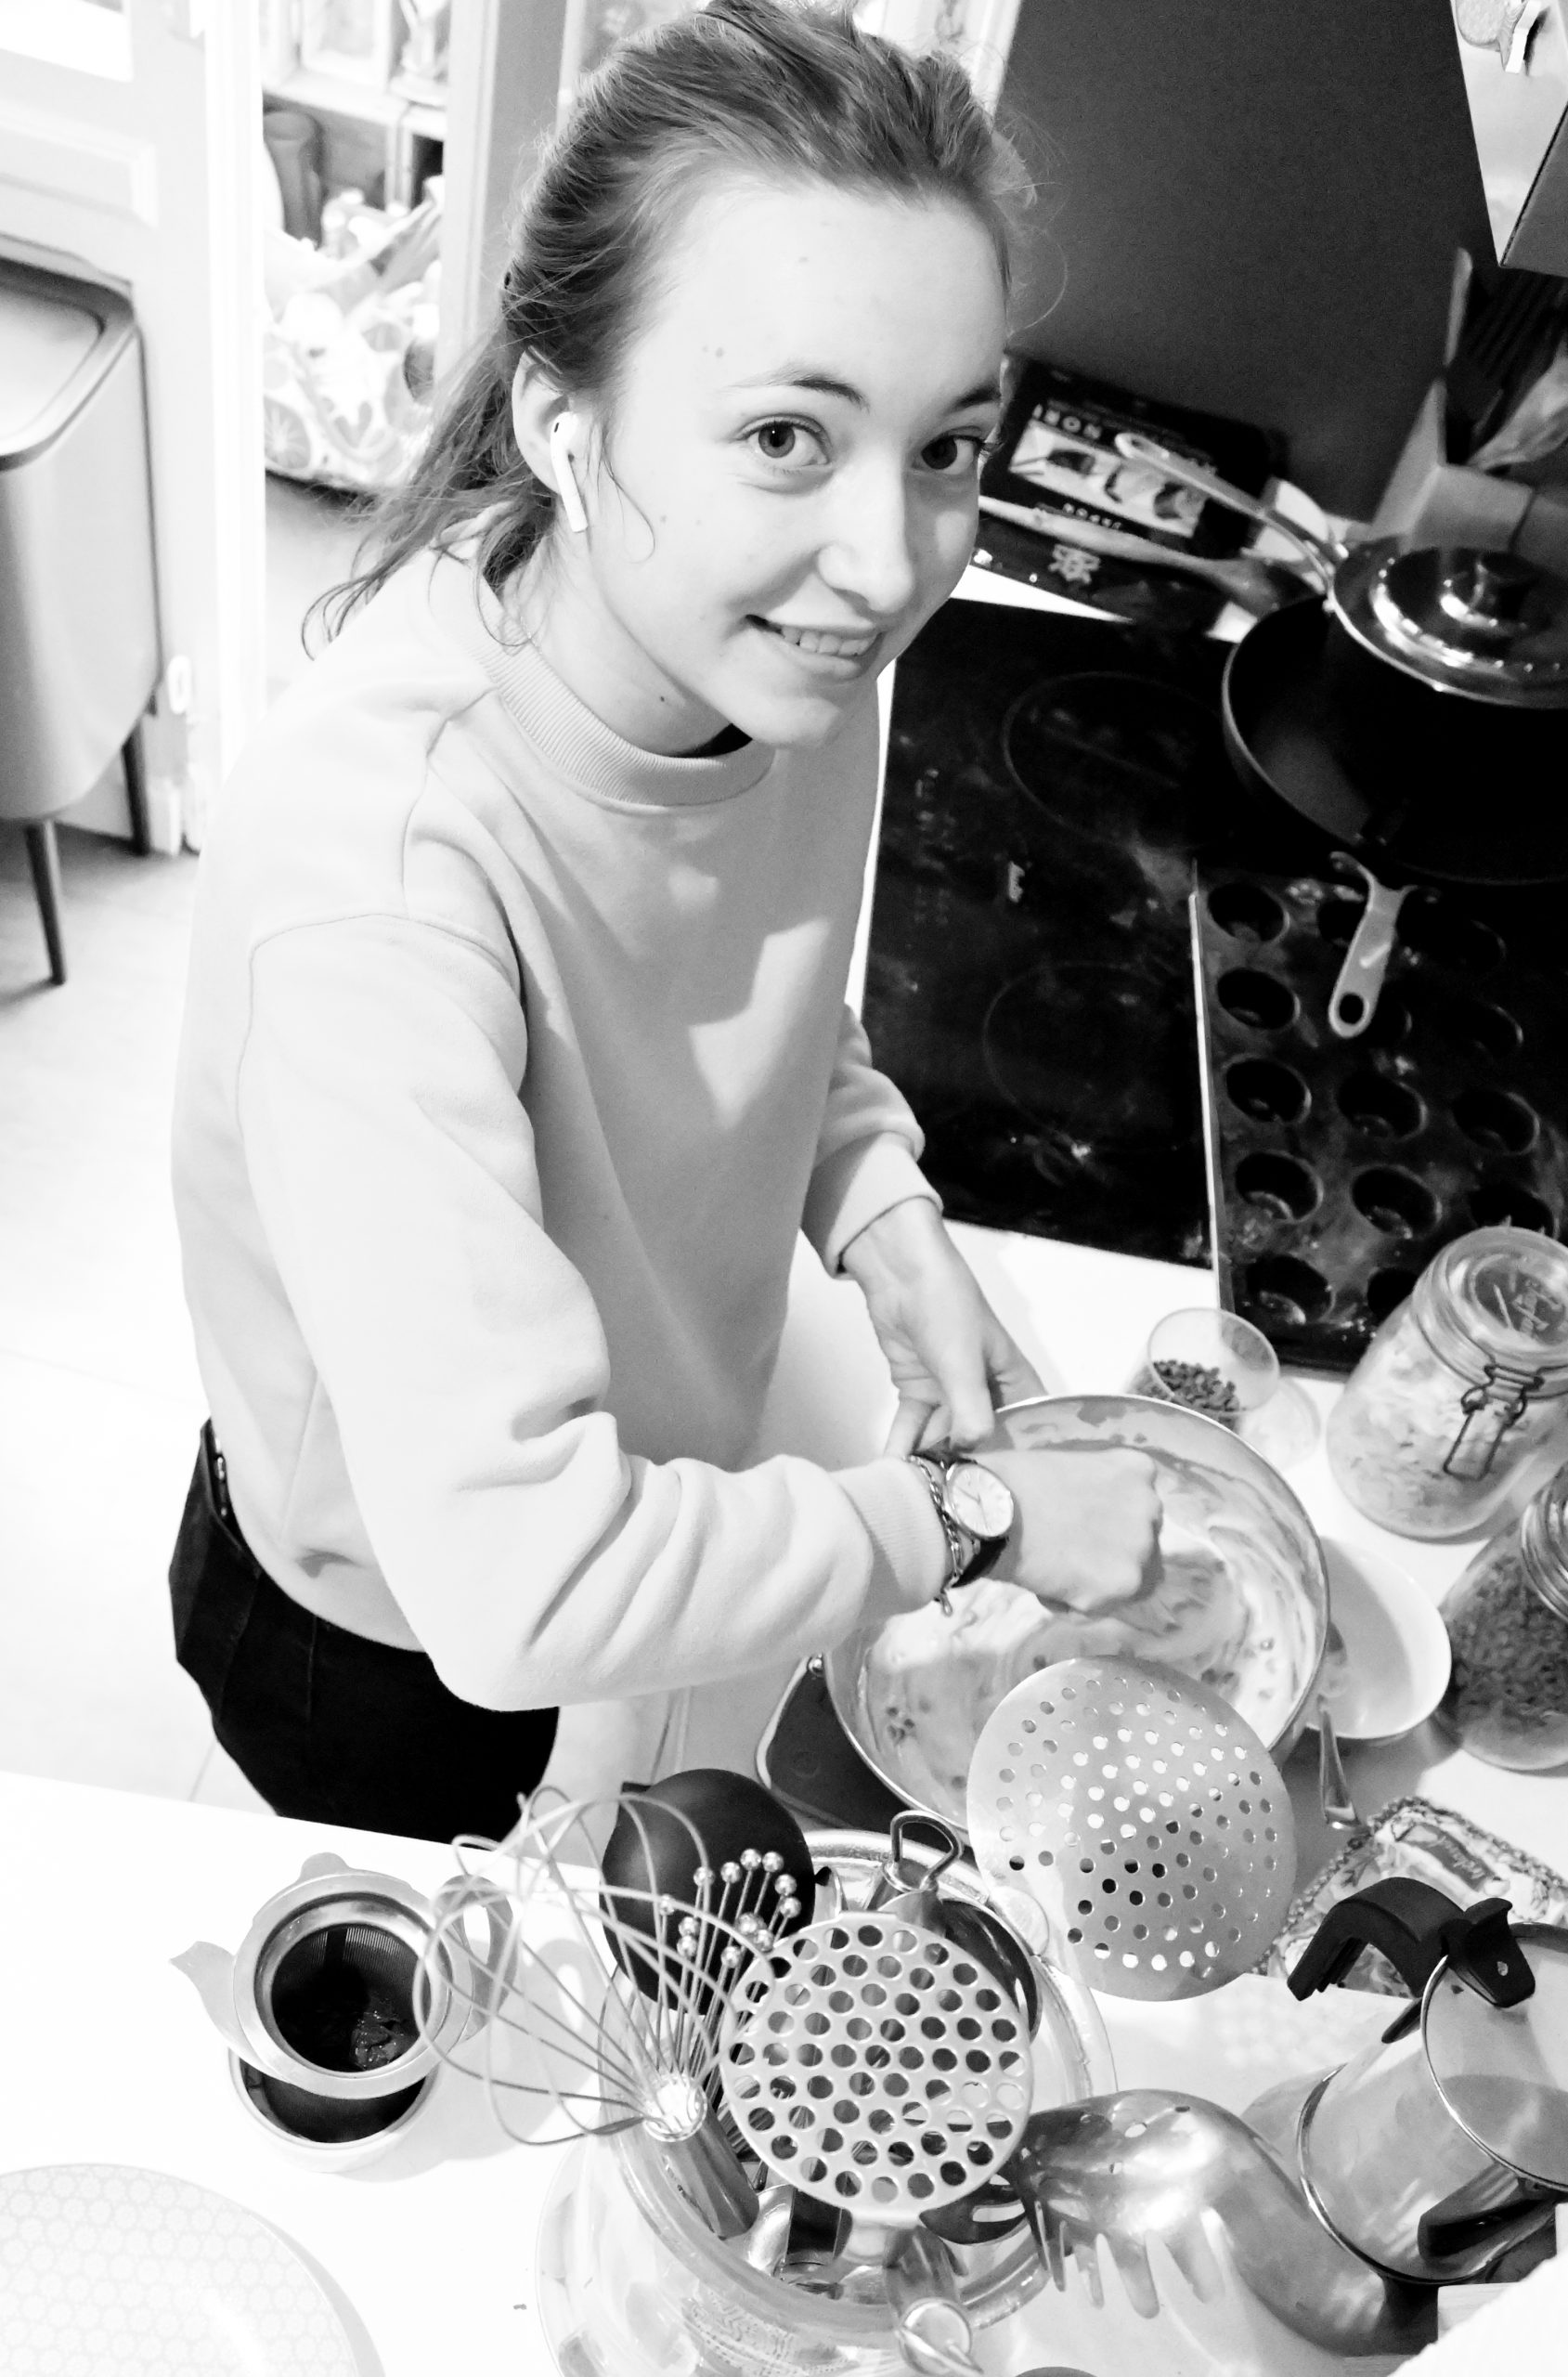 jeune fille en cuisine pour des gateaux 